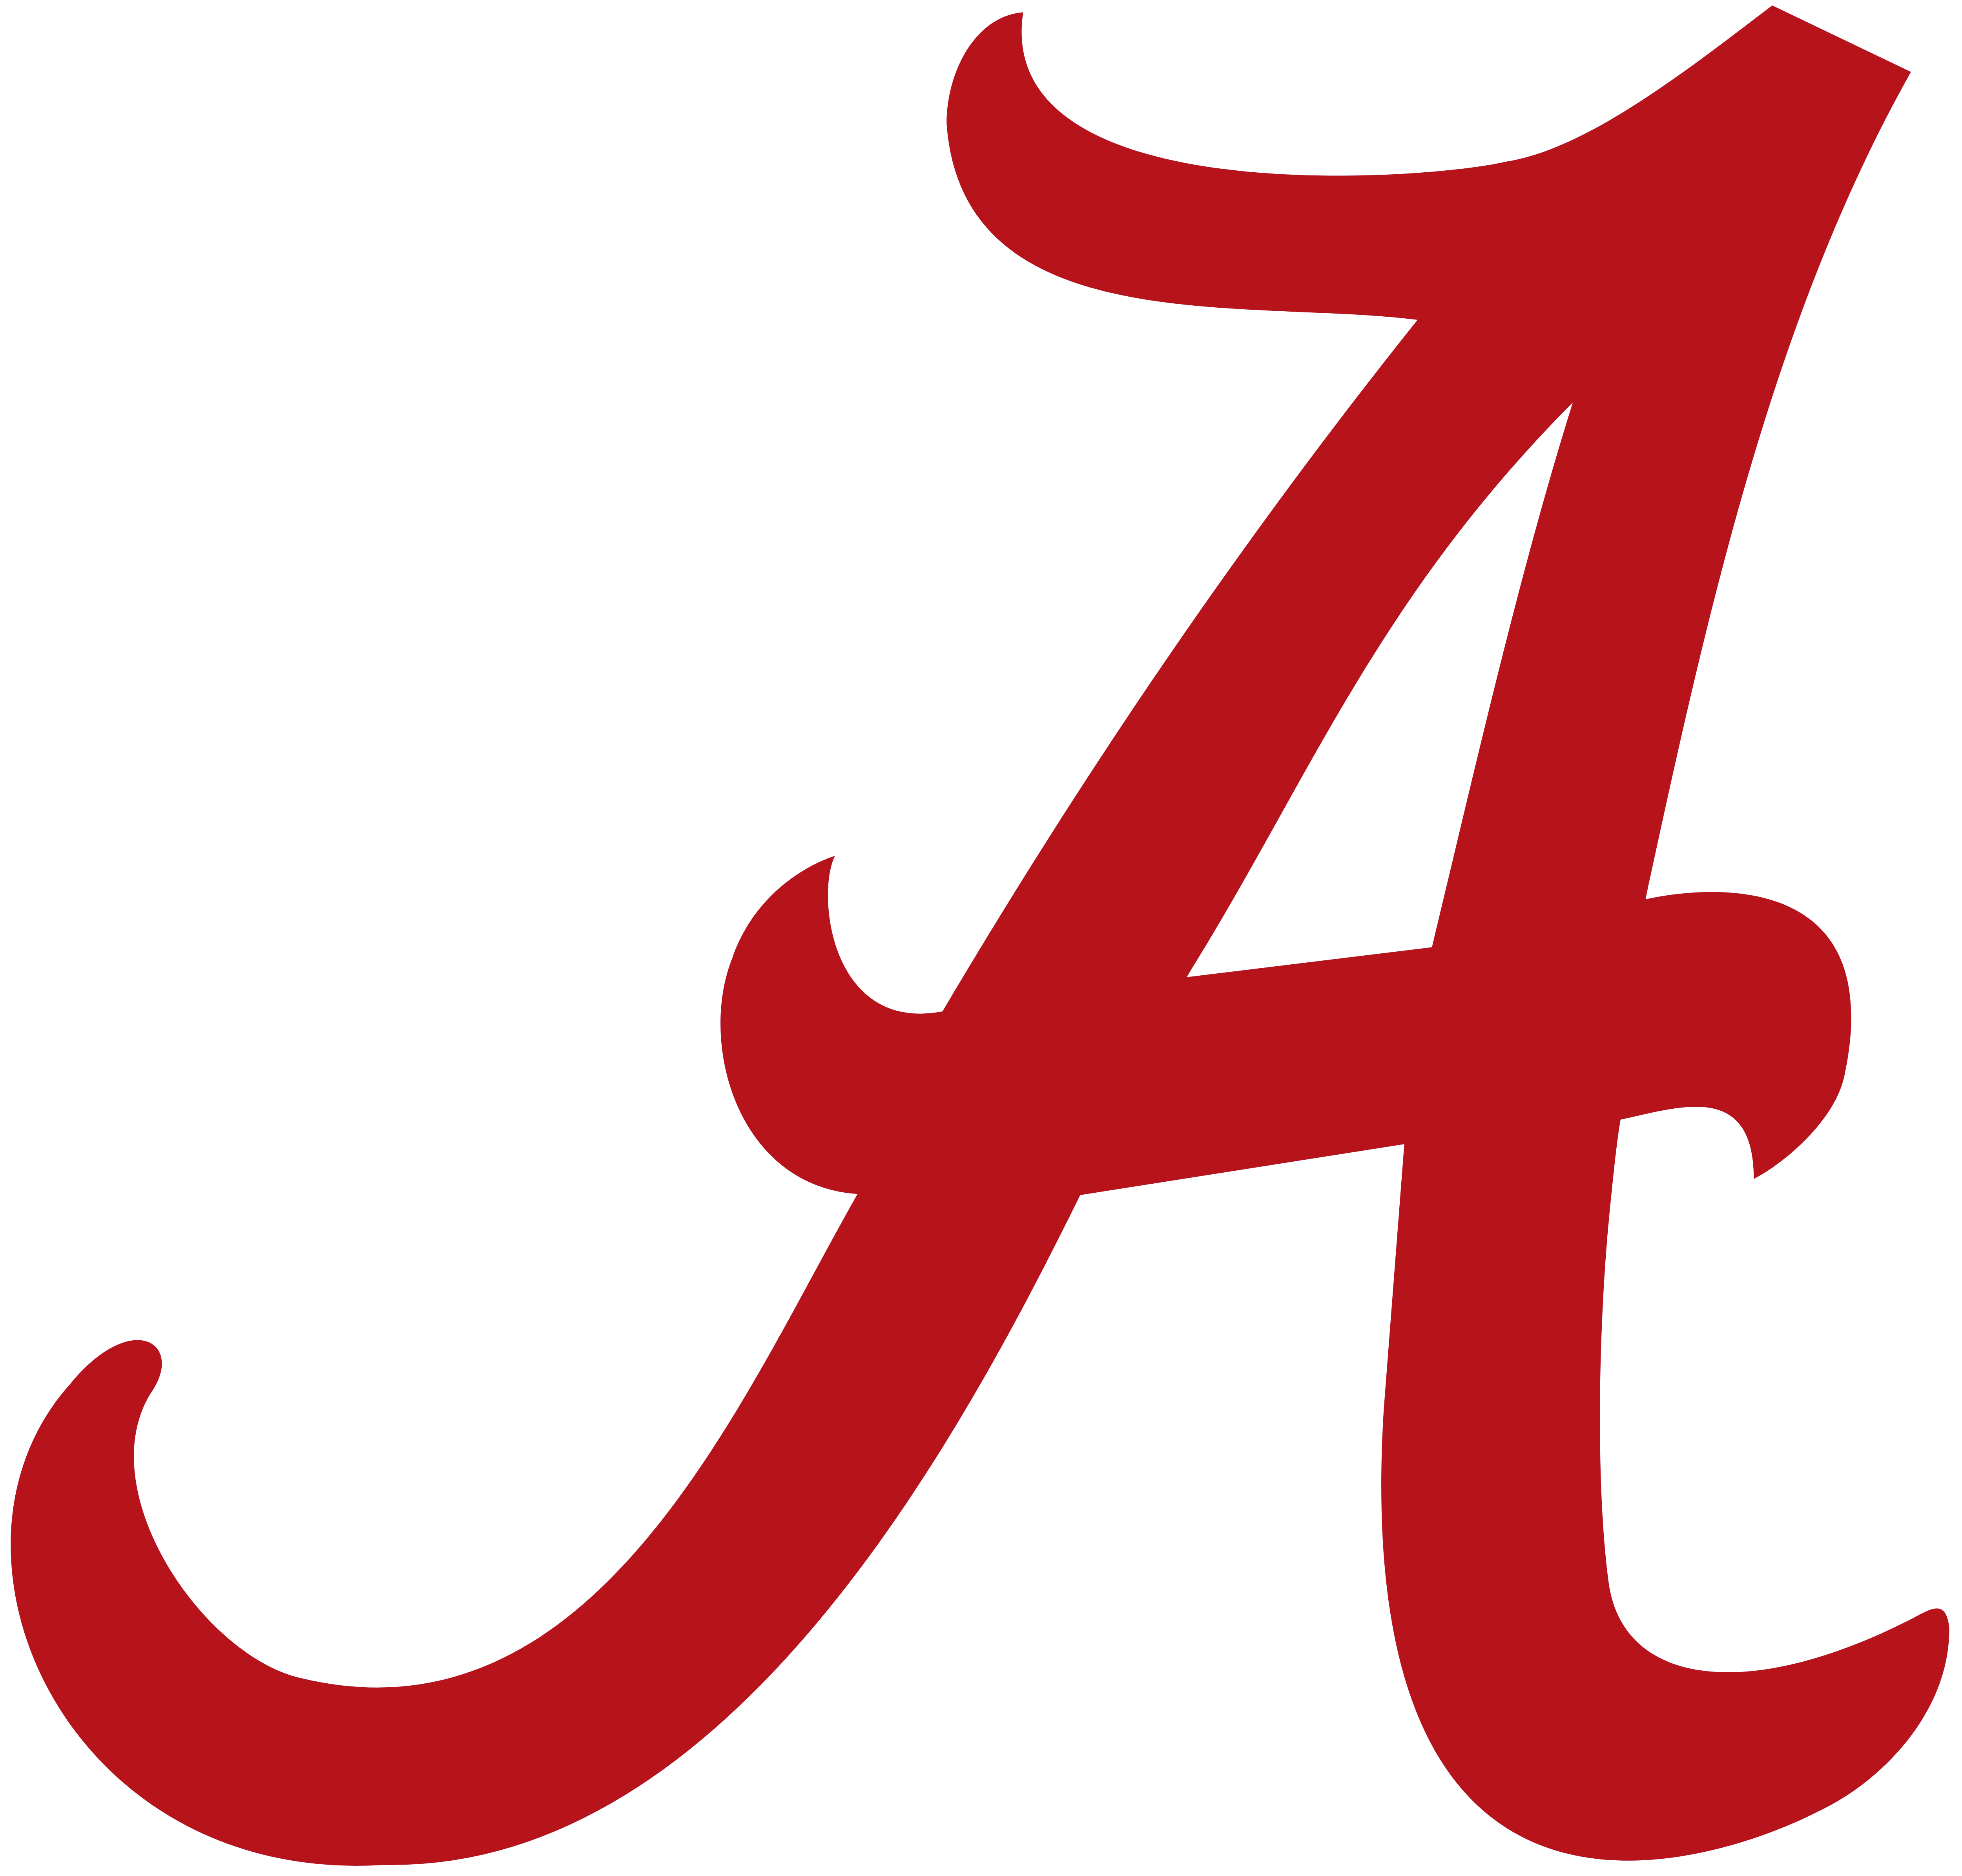 Alabama Crimson Tide (ACT) logo, seal, .png, transparent